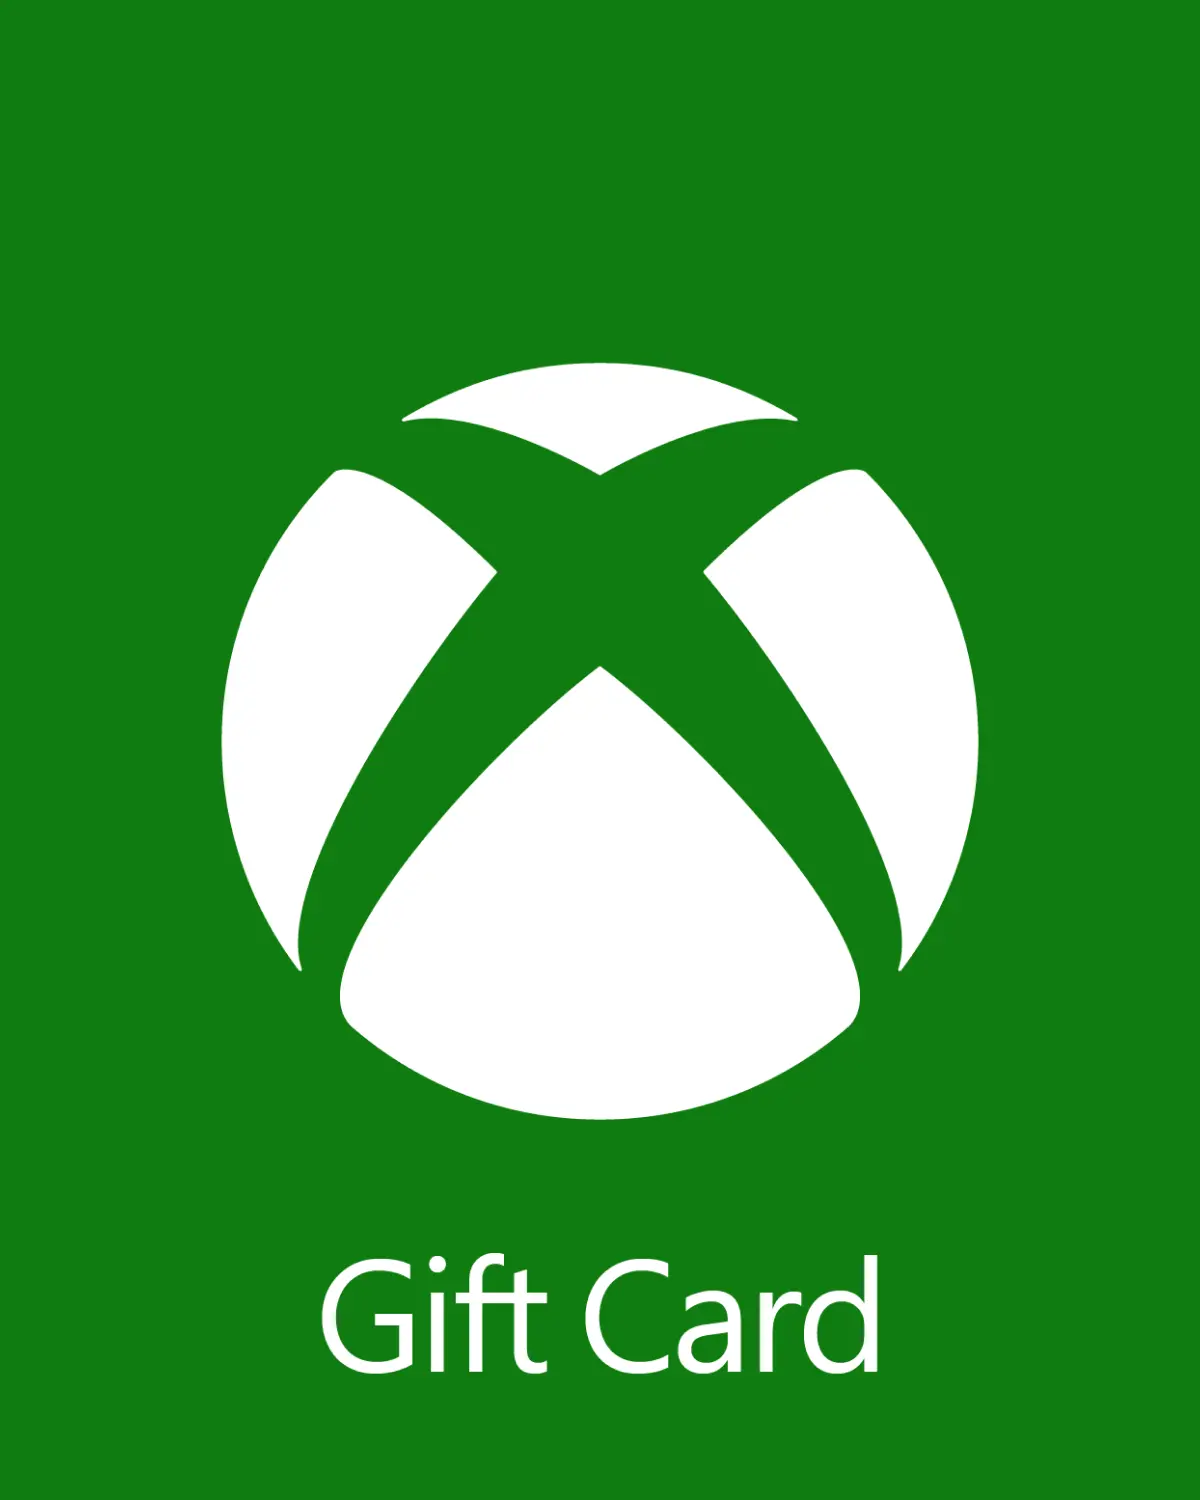 Xbox £15 GBP Gift Card (UK) - Digital Code